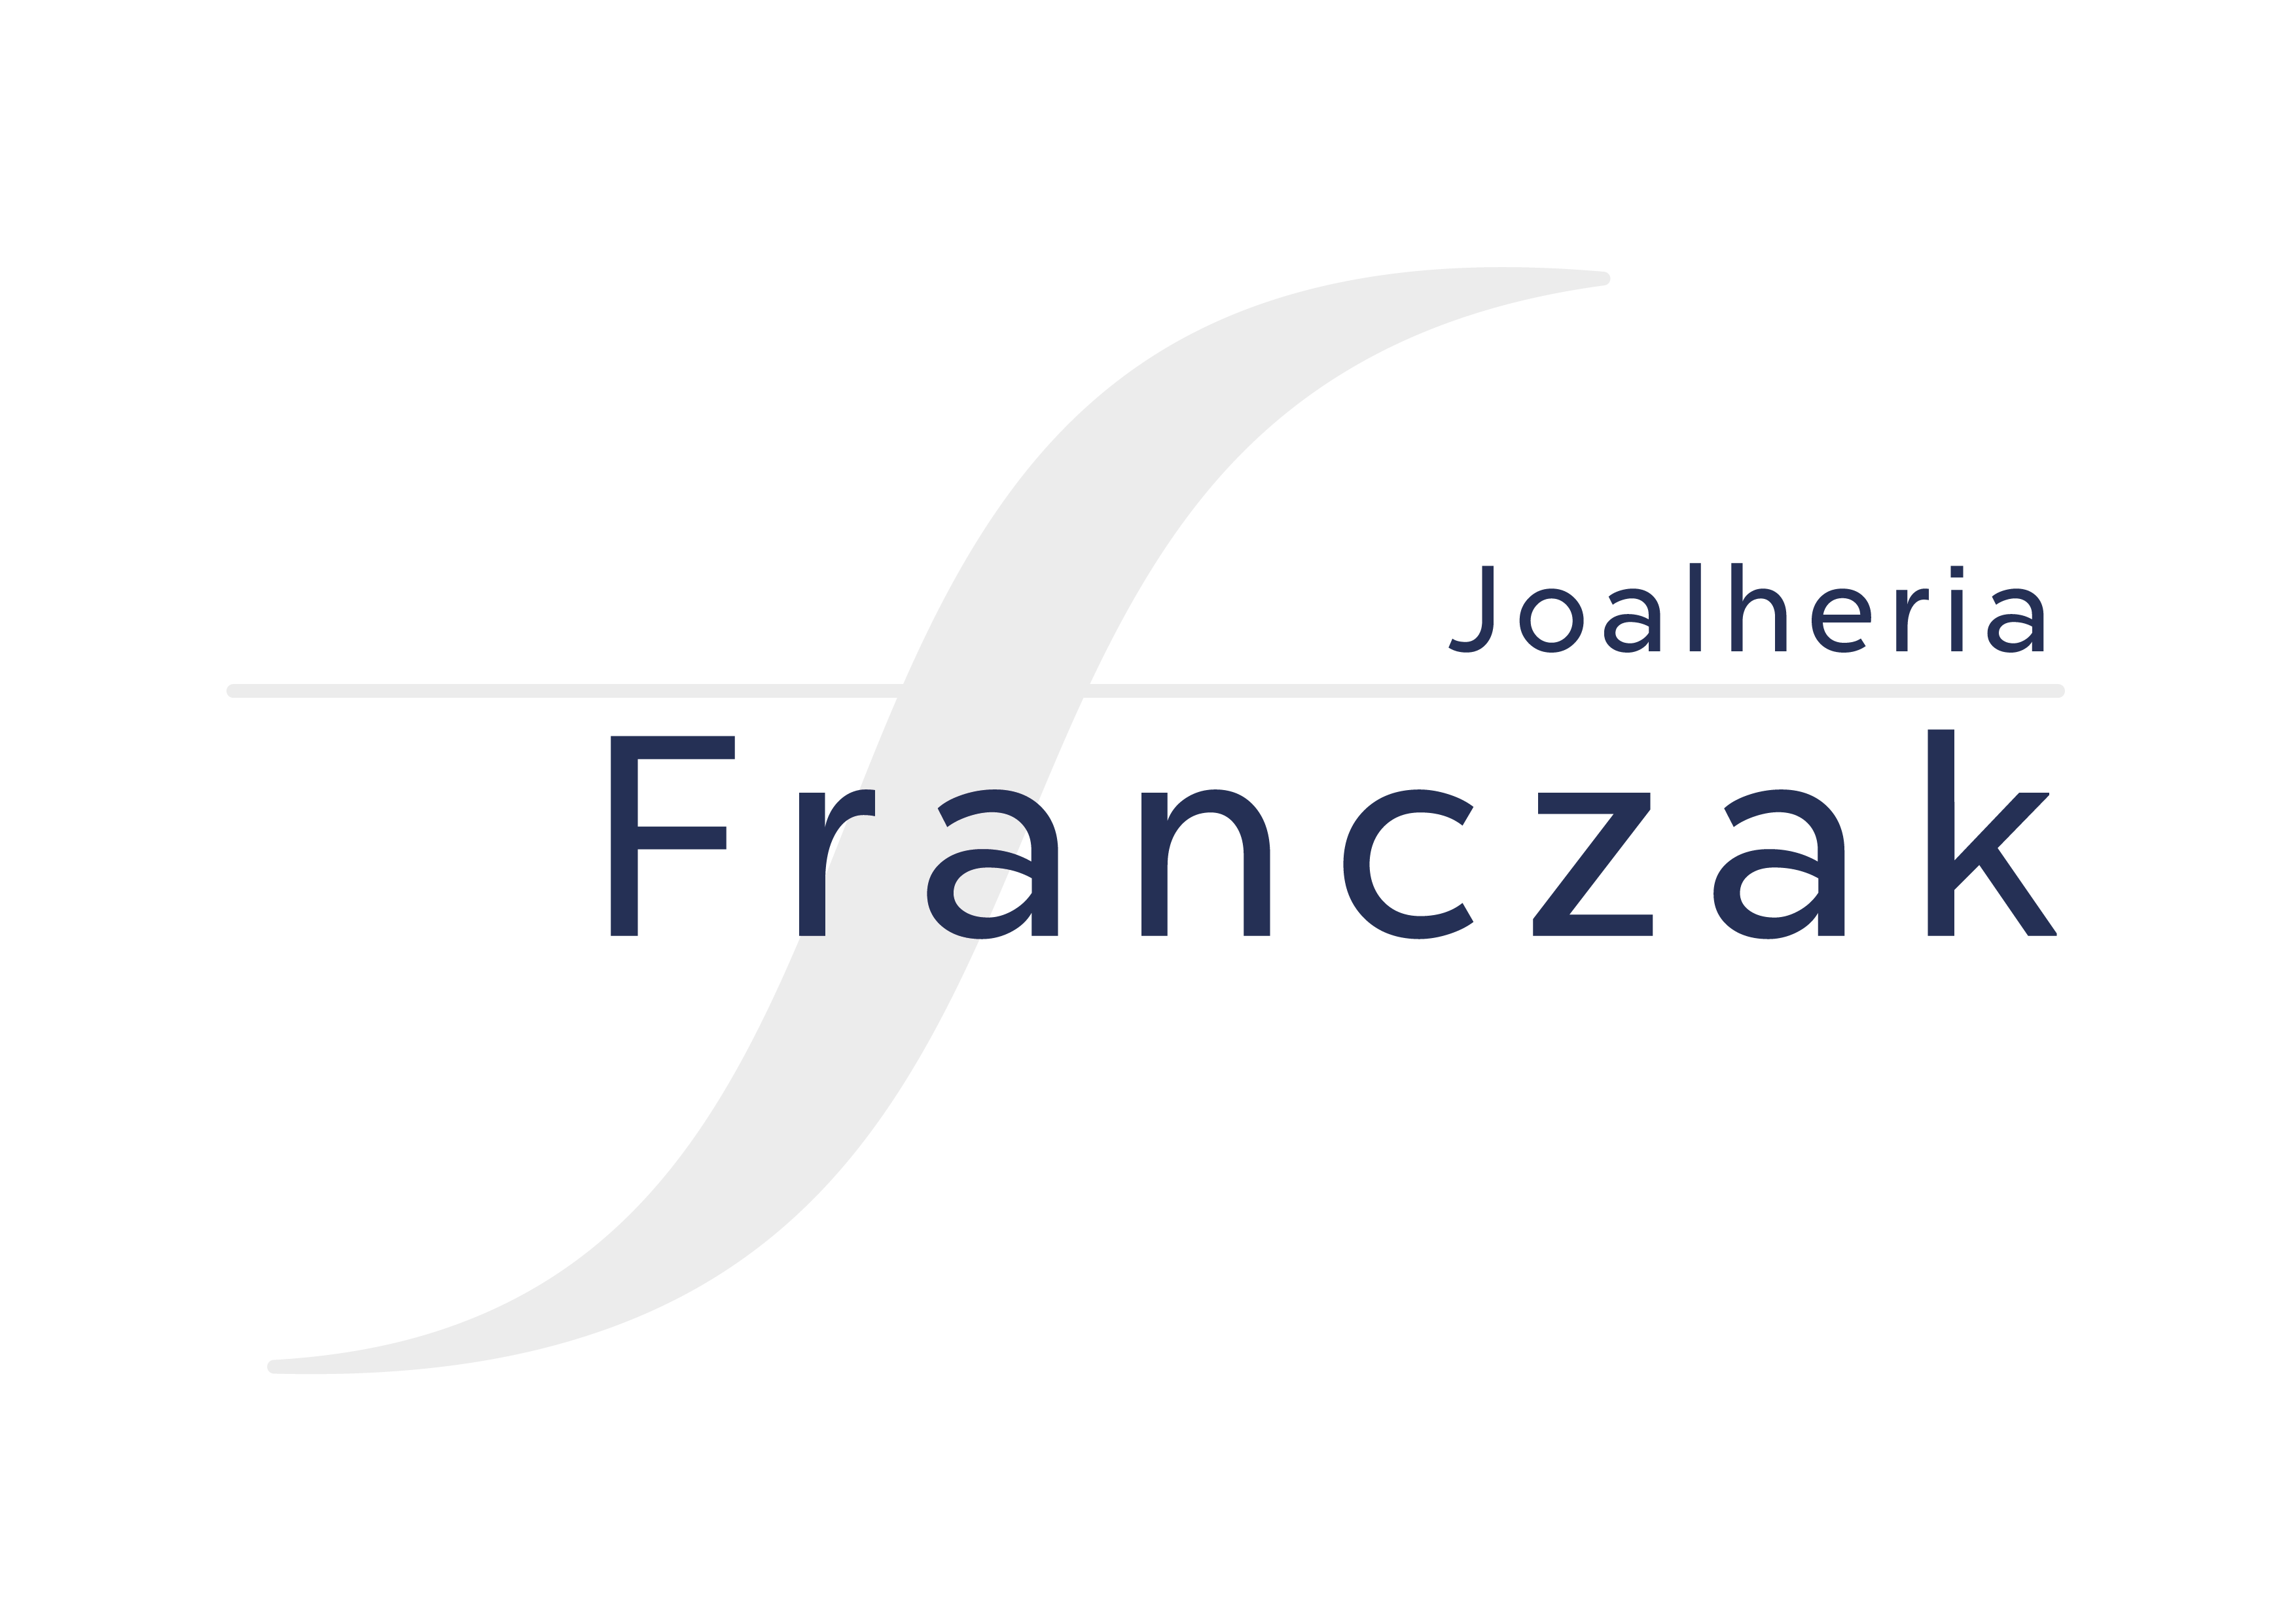 FRANCZAK JOALHERIA